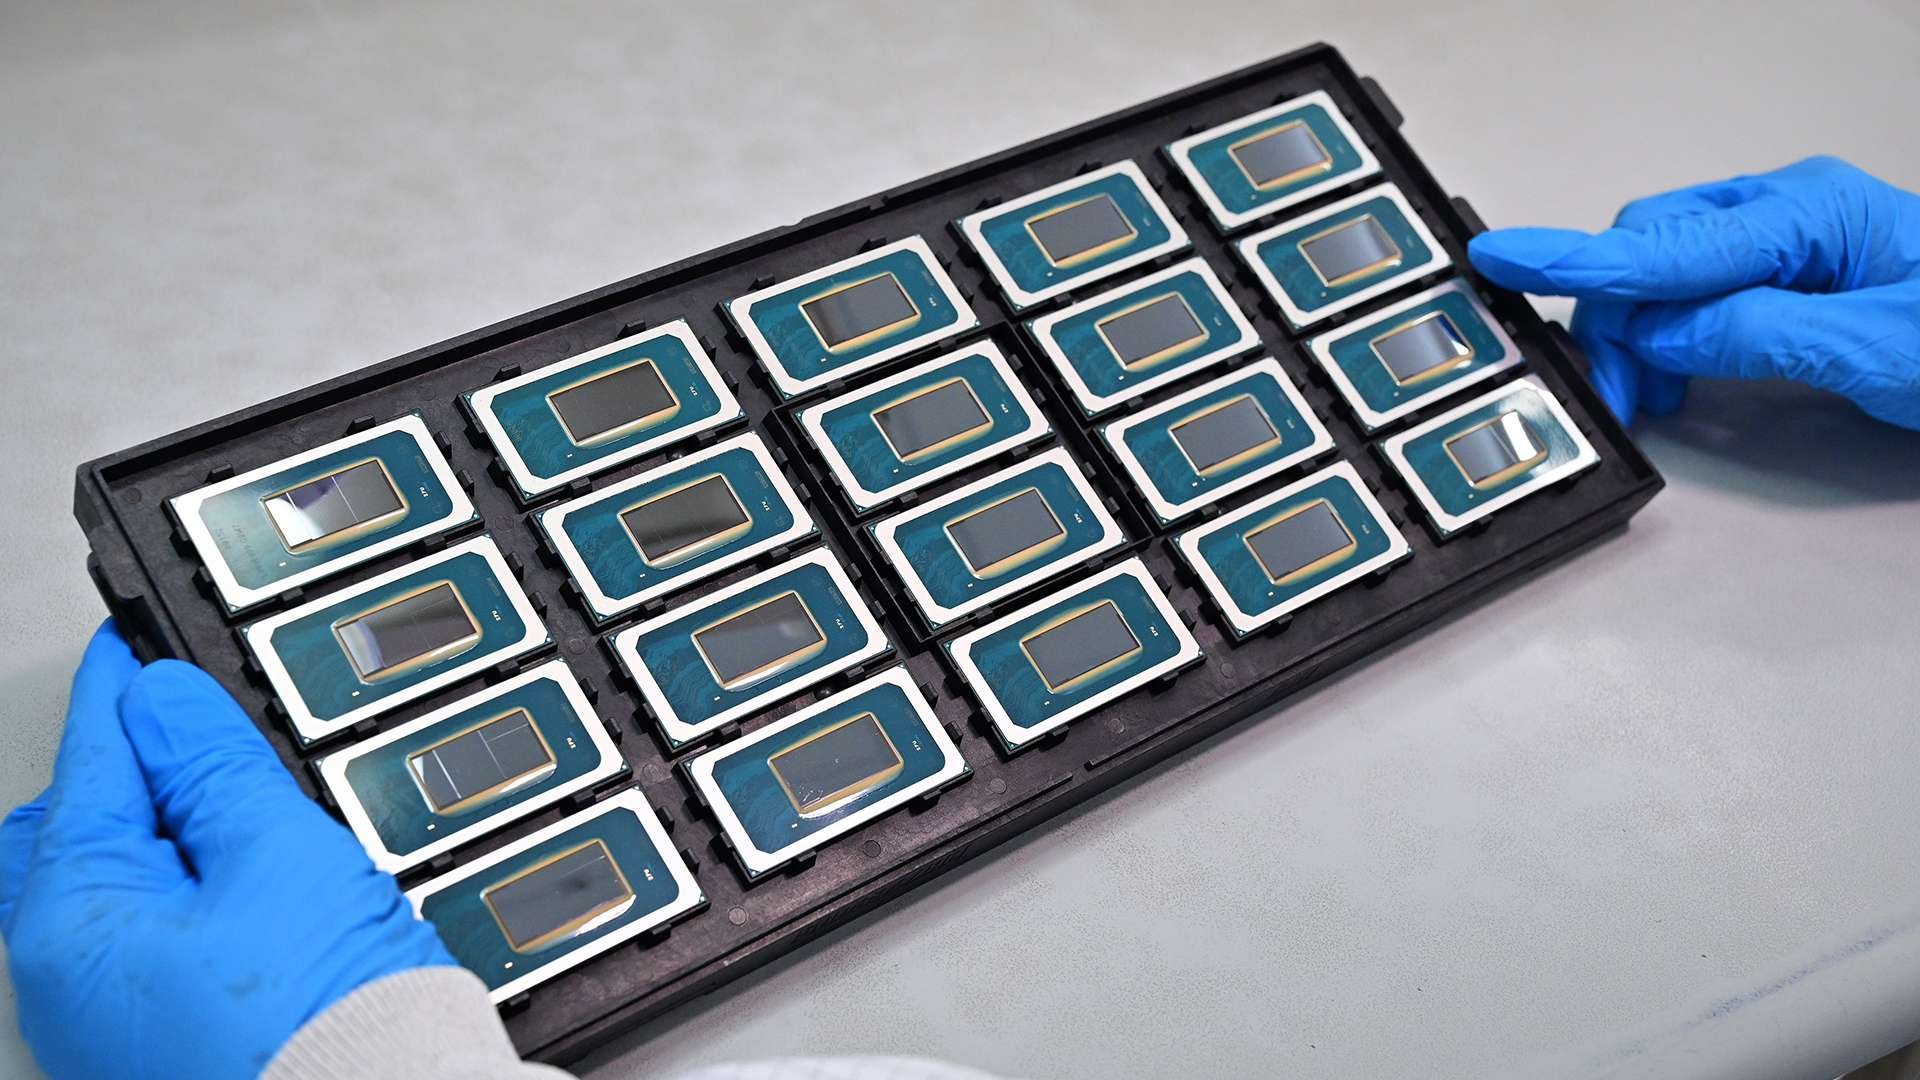 Os novos processadores da Intel são capazes de rodar chatbots com inteligência artificial sem precisar de internet.